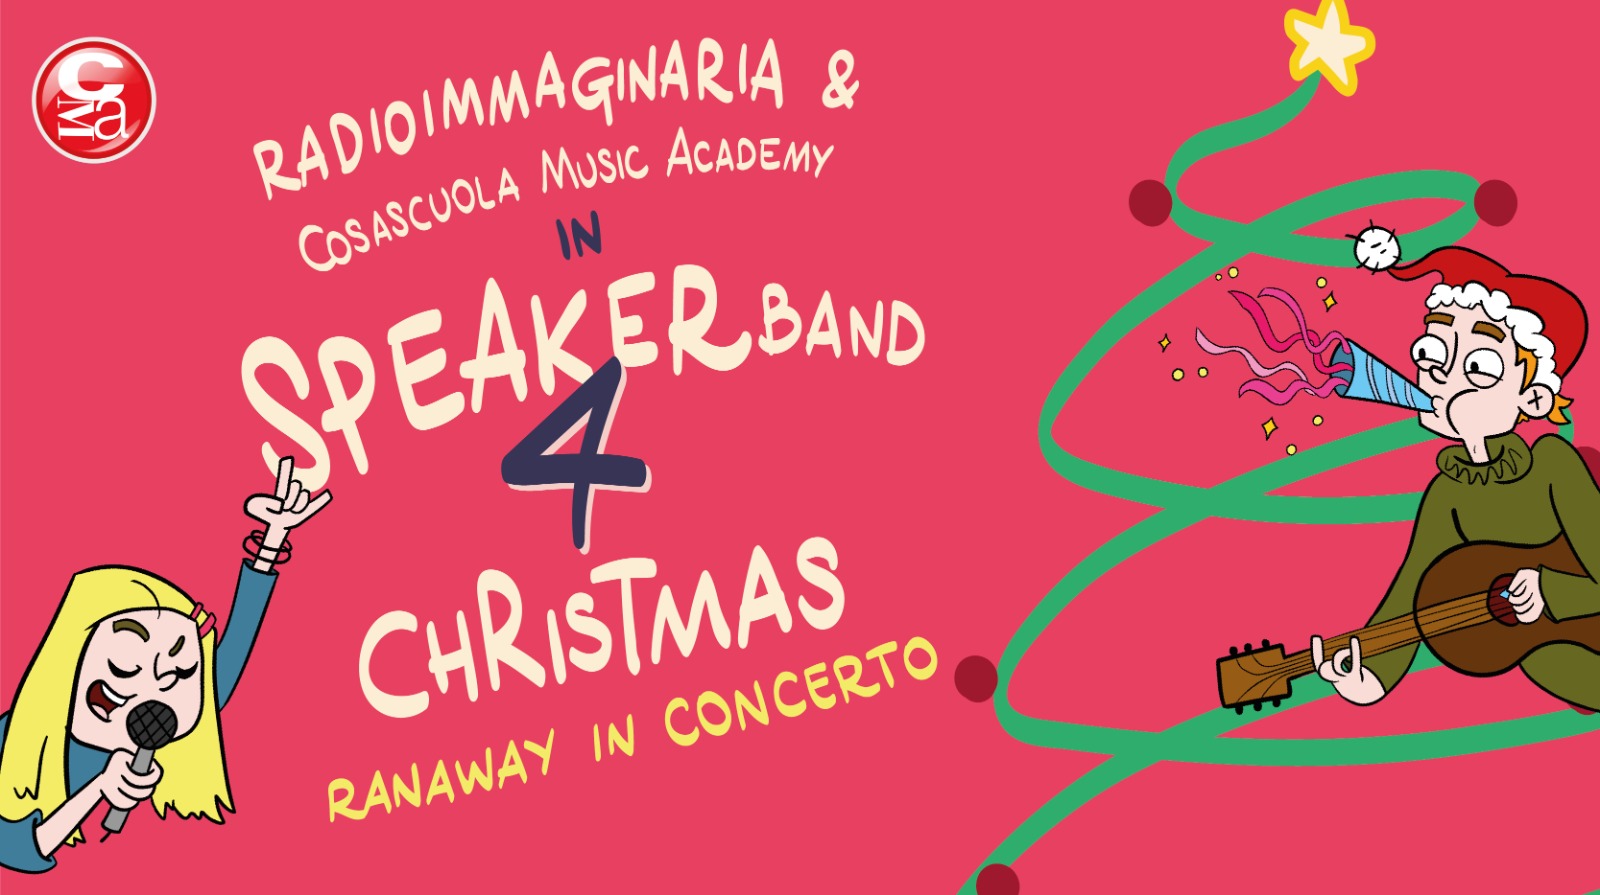 L'immagine è il volantino di Speakerband 4 Christmas, l'evento organizzato da Radioimmaginaria il 23 dicembre 2021 insieme a Cosascuola Music Academy